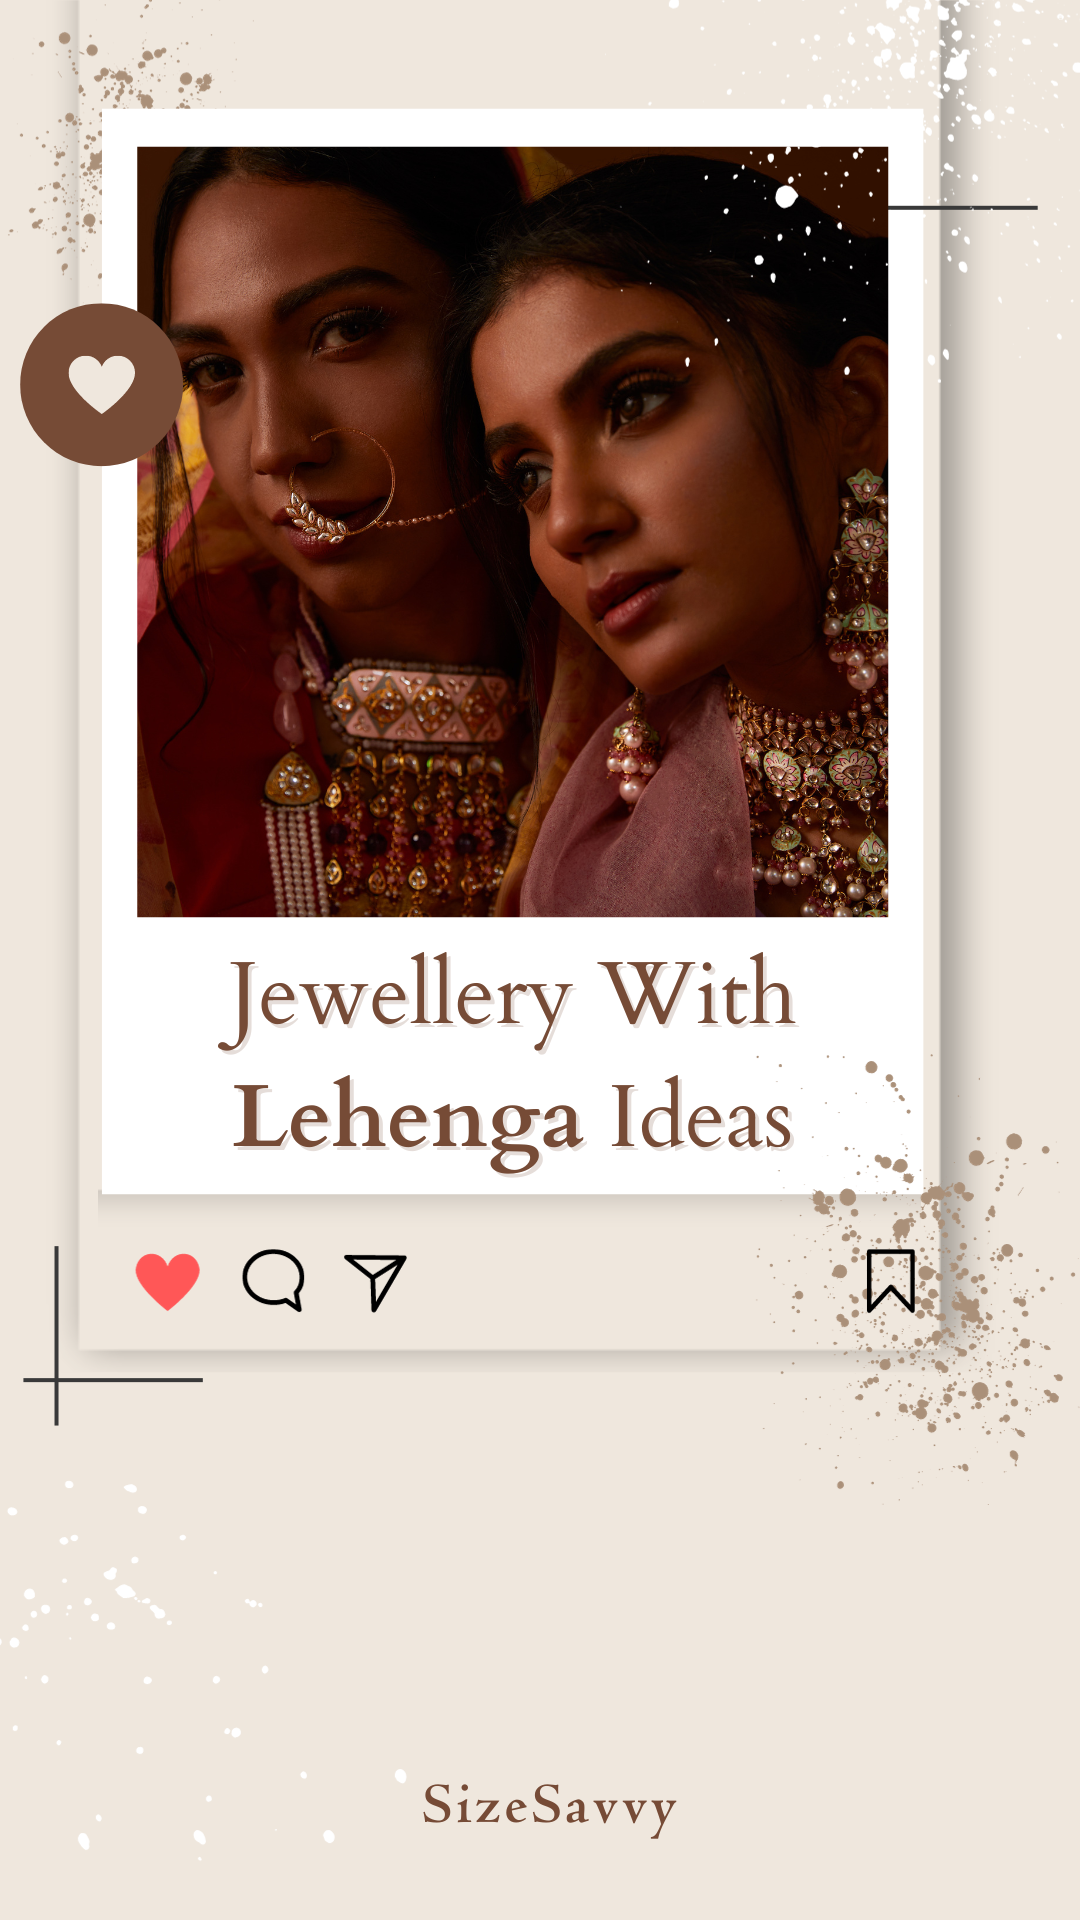 लहंगे के साथ इस तरह की ज्वेलरी के डिजाइन करें, ट्राई लगेंगे स्टाइलिश:  Lehenga with Jewellery - Grehlakshmi